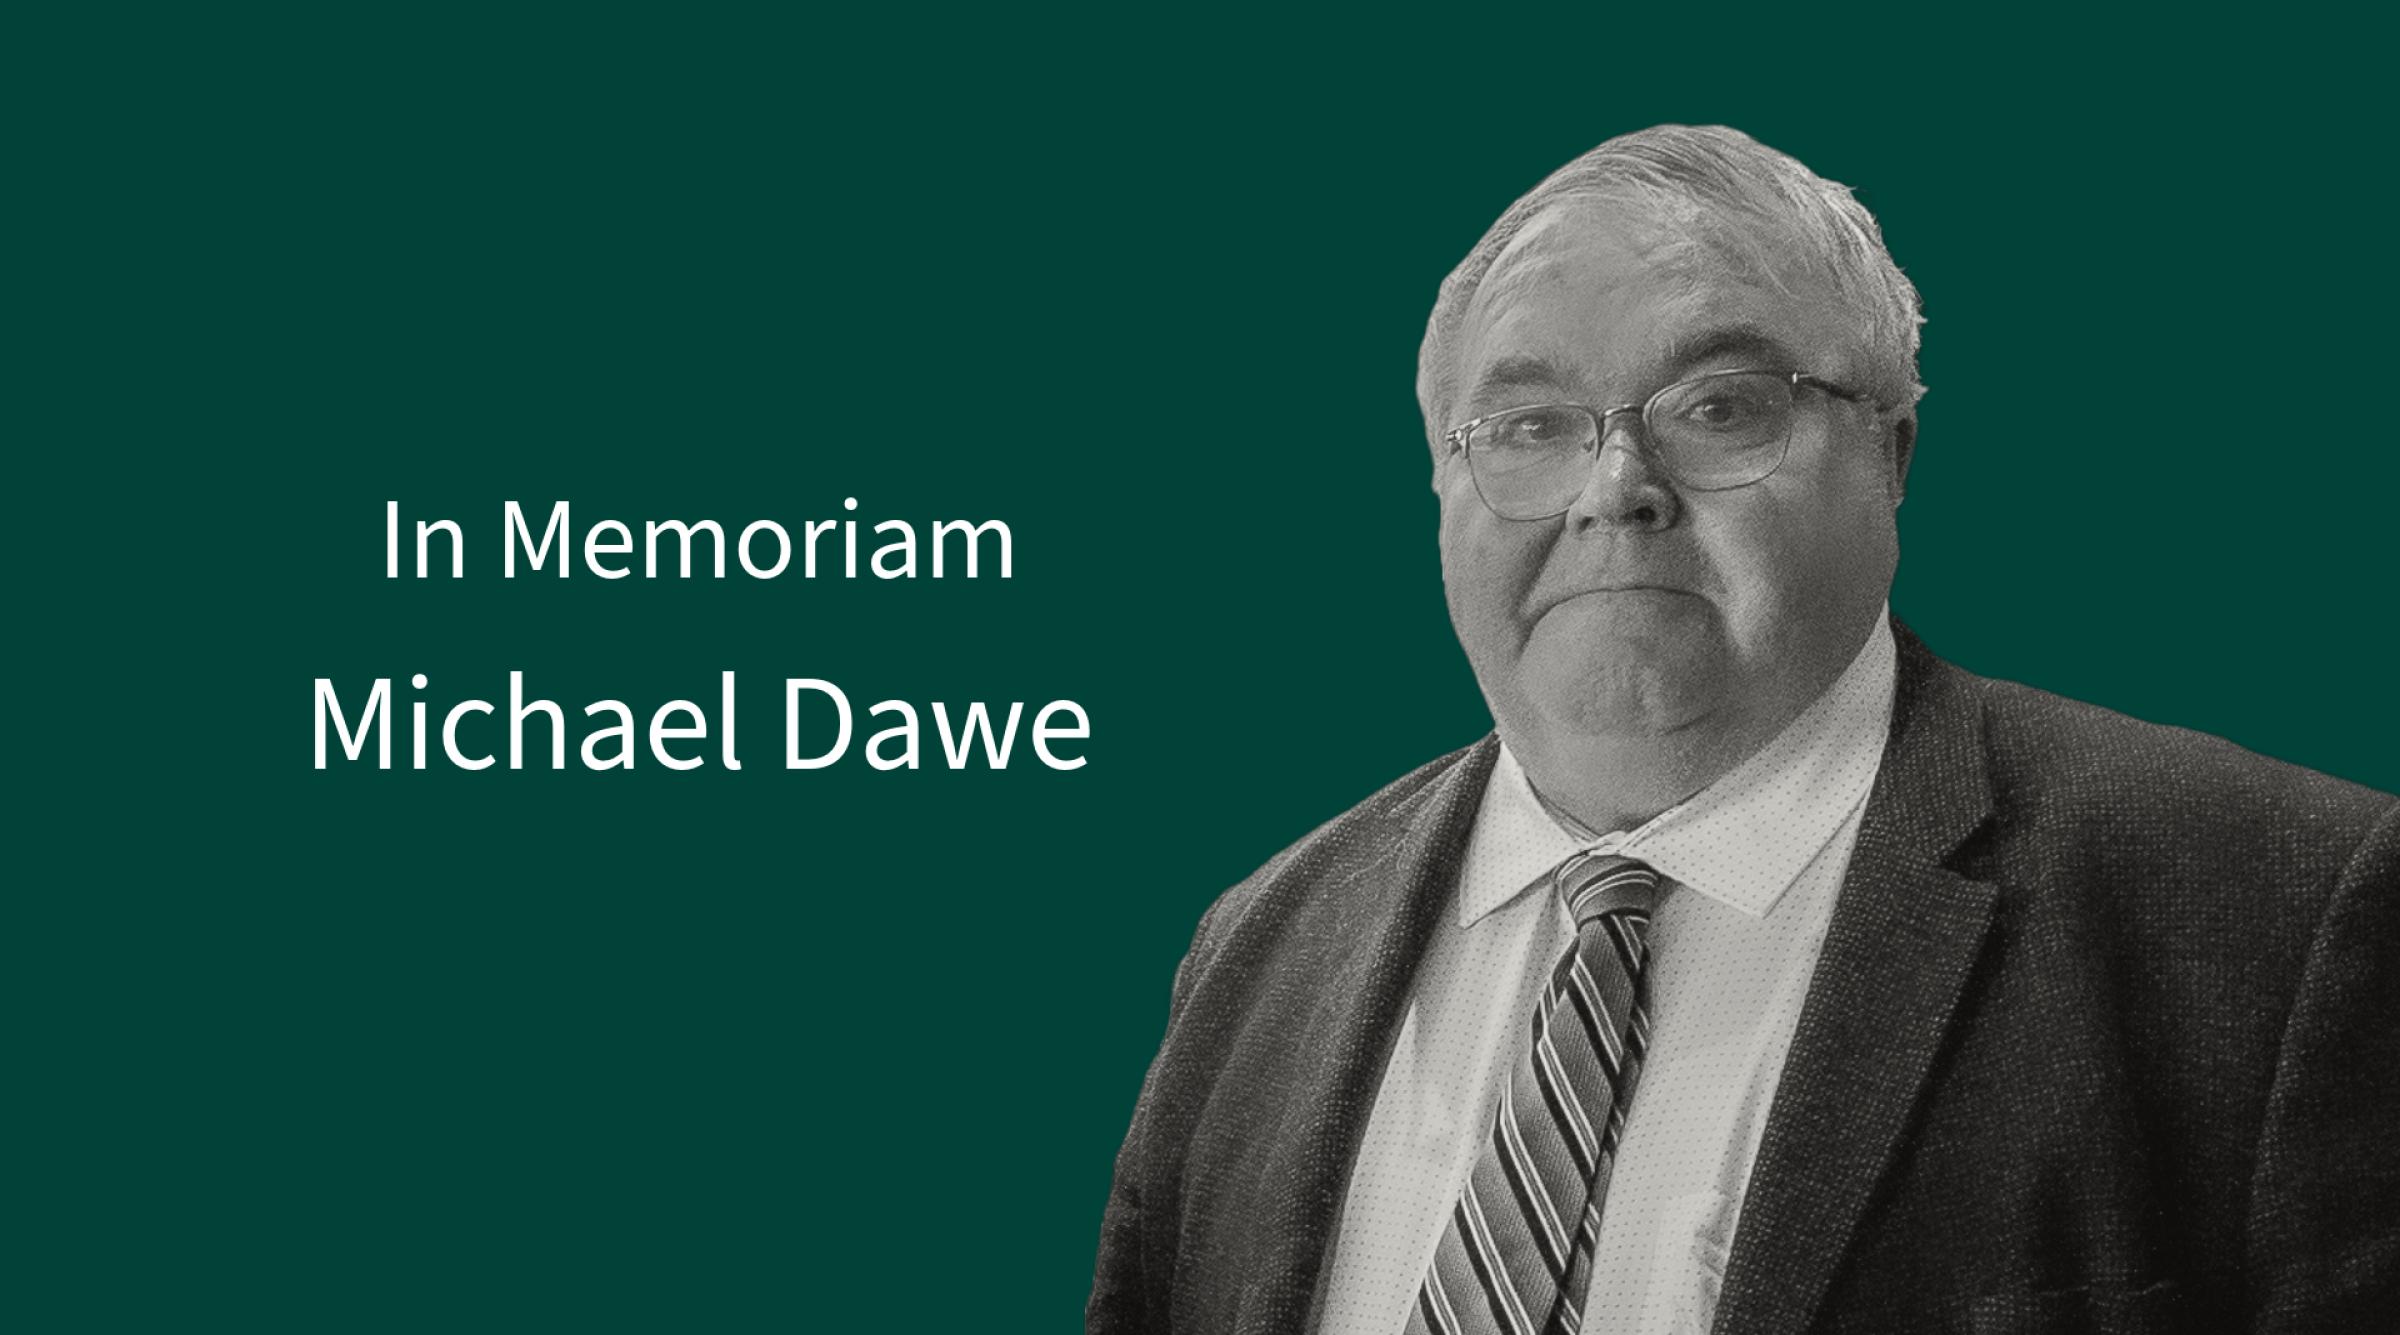 In Memoriam: Michael Dawe